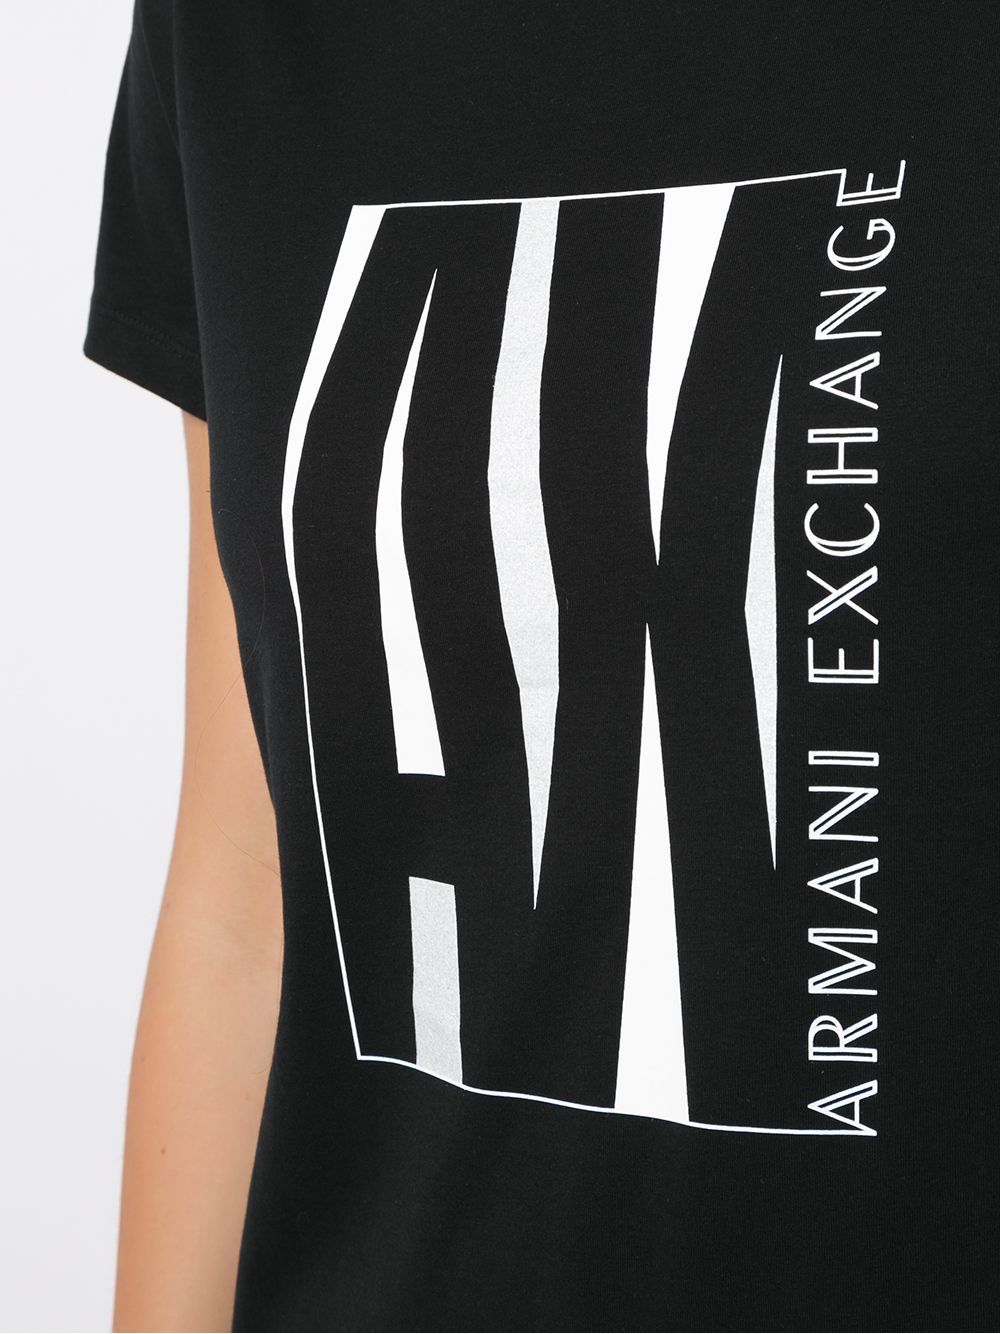 фото Armani exchange футболка с логотипом